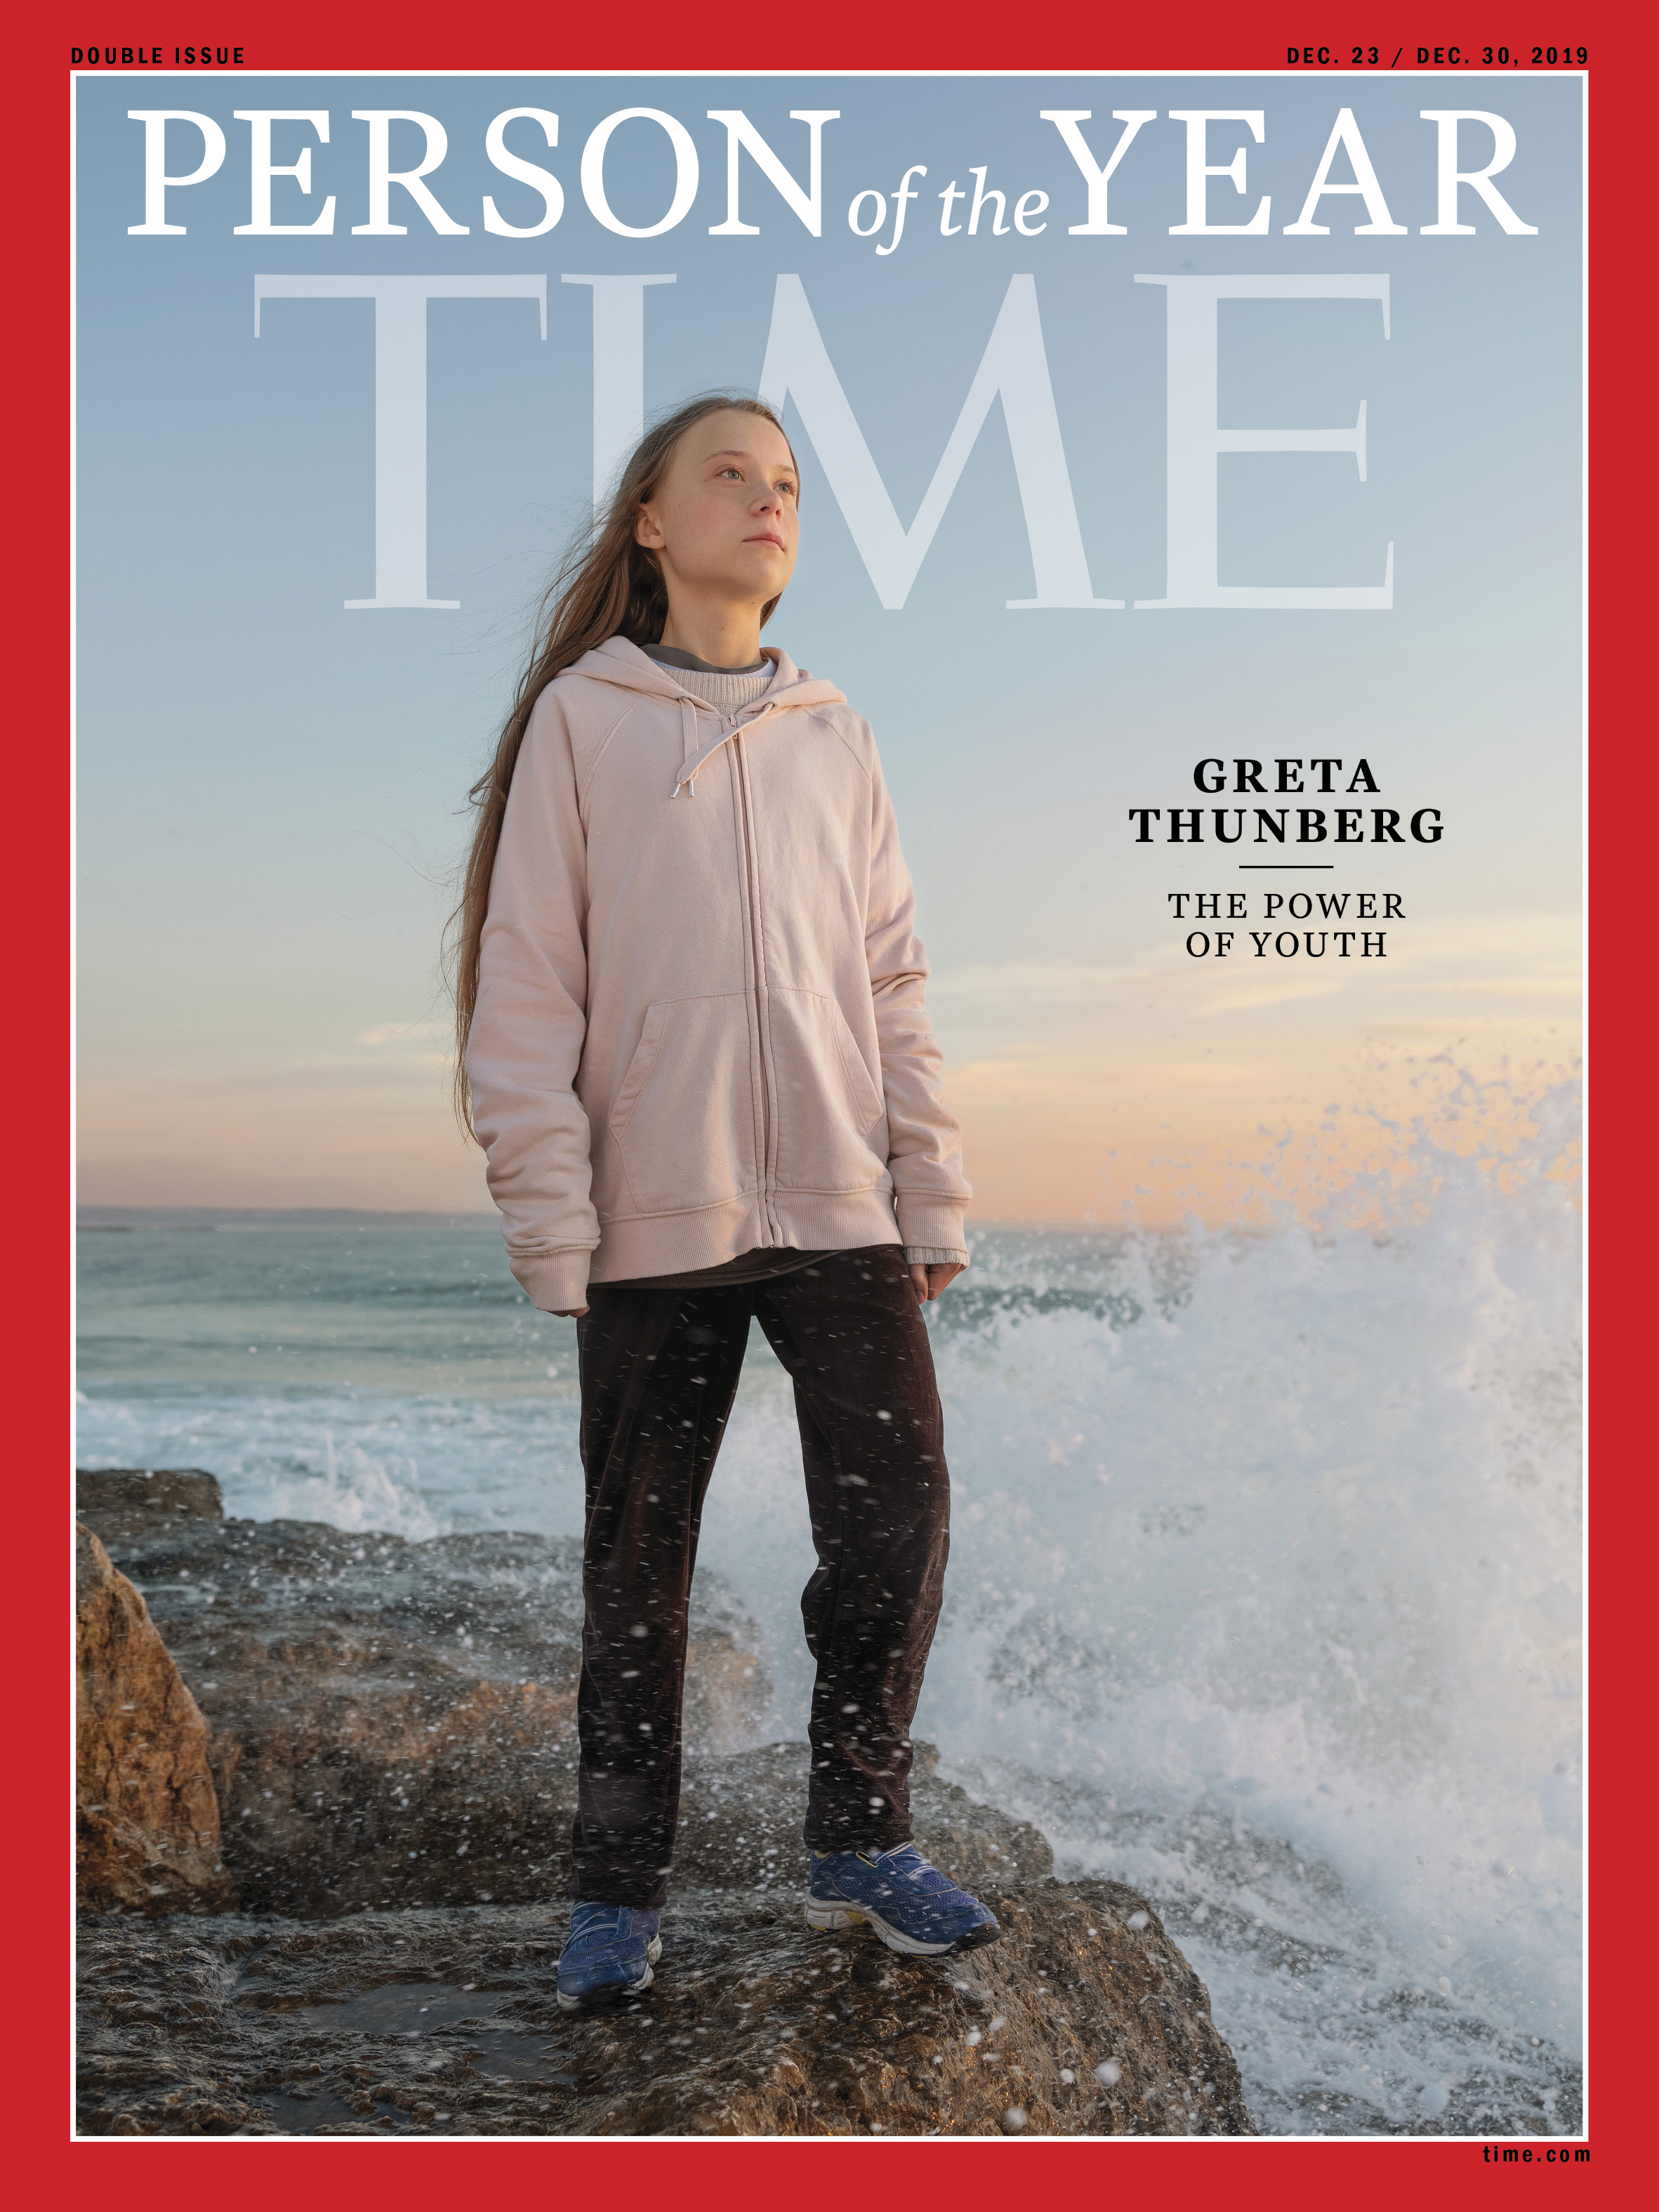 FOTO Greta Thunberg, desemnată „persoana anului 2019”, potrivit publicației TIME. Cum a fost motivată decizia